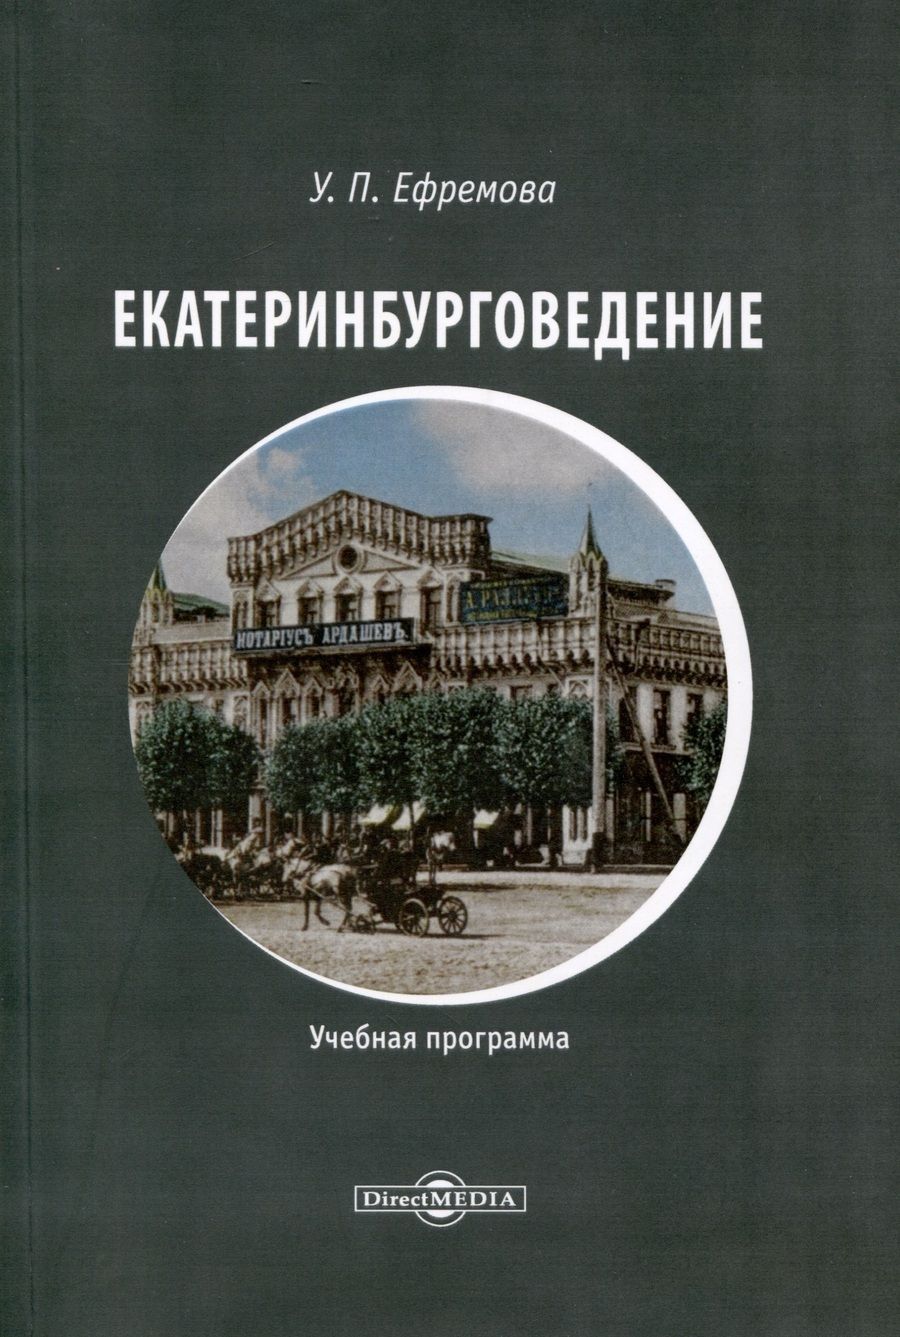 Обложка книги "Ефремова: Екатеринбурговедение. Учебная программа"